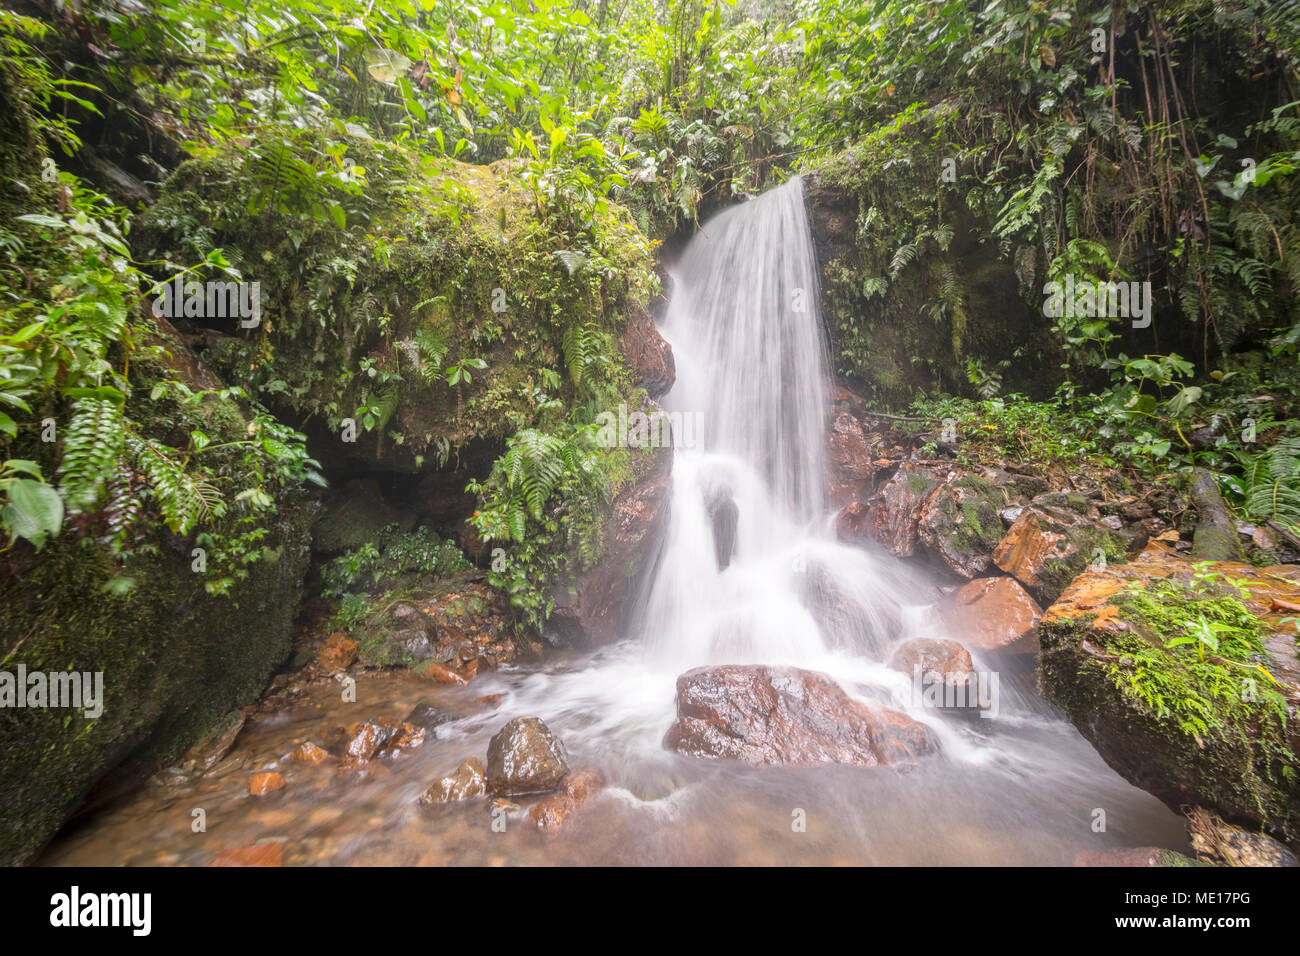 Cascade sur un ruisseau de forêt vierge. Dans la forêt tropicale humide sur les pentes amazoniennes des Andes, province de Morona Santiago en Équateur Banque D'Images